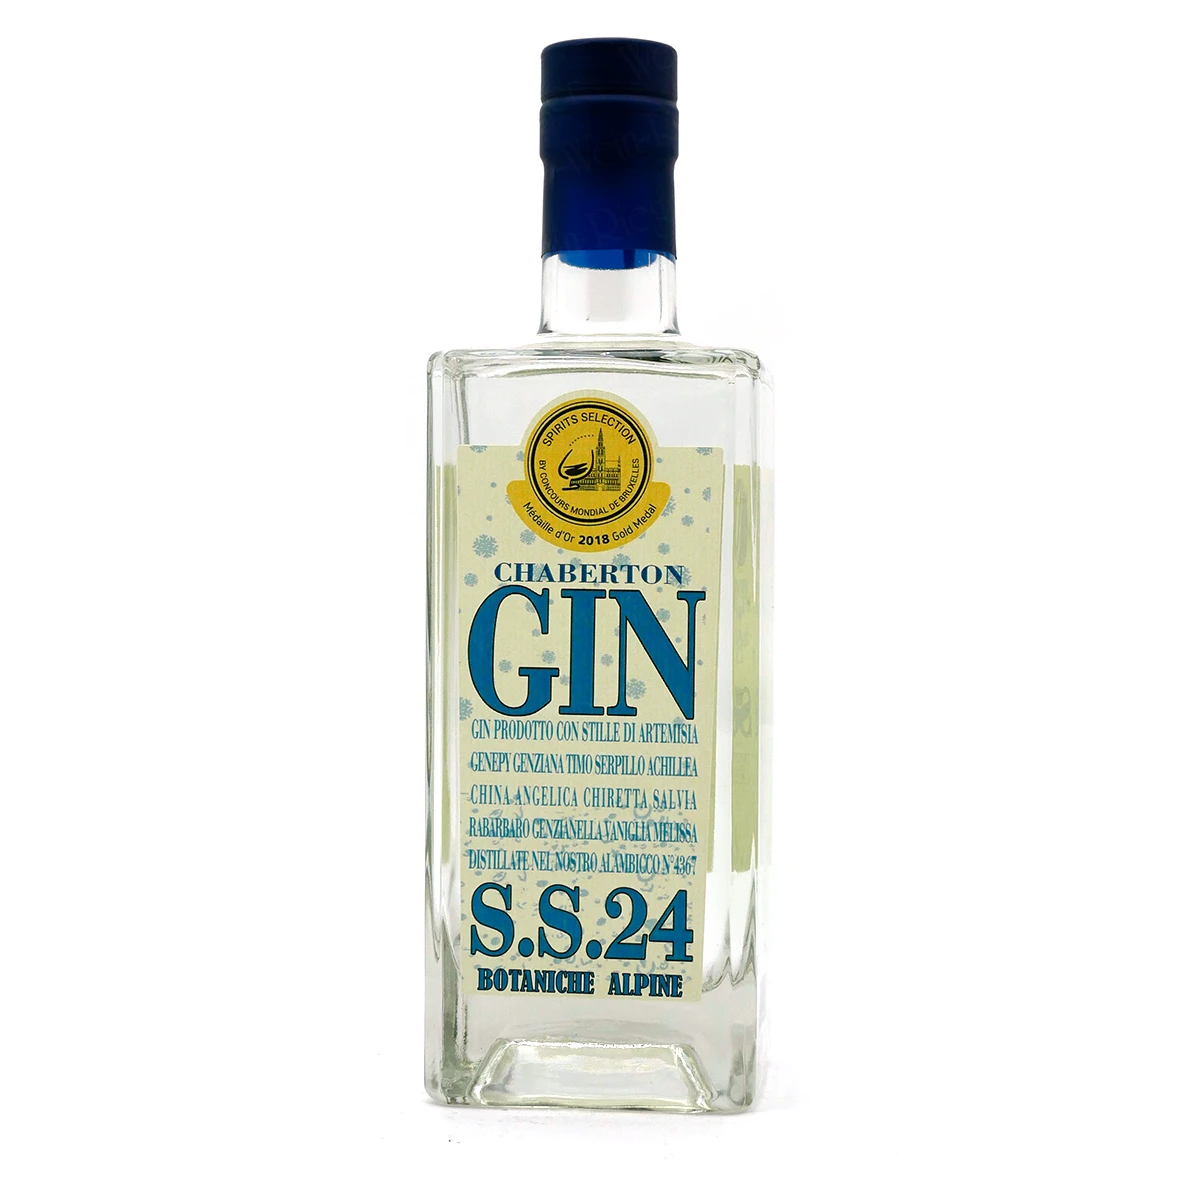 CHABERTON Gin S.S.24 | Erboristica Alpina